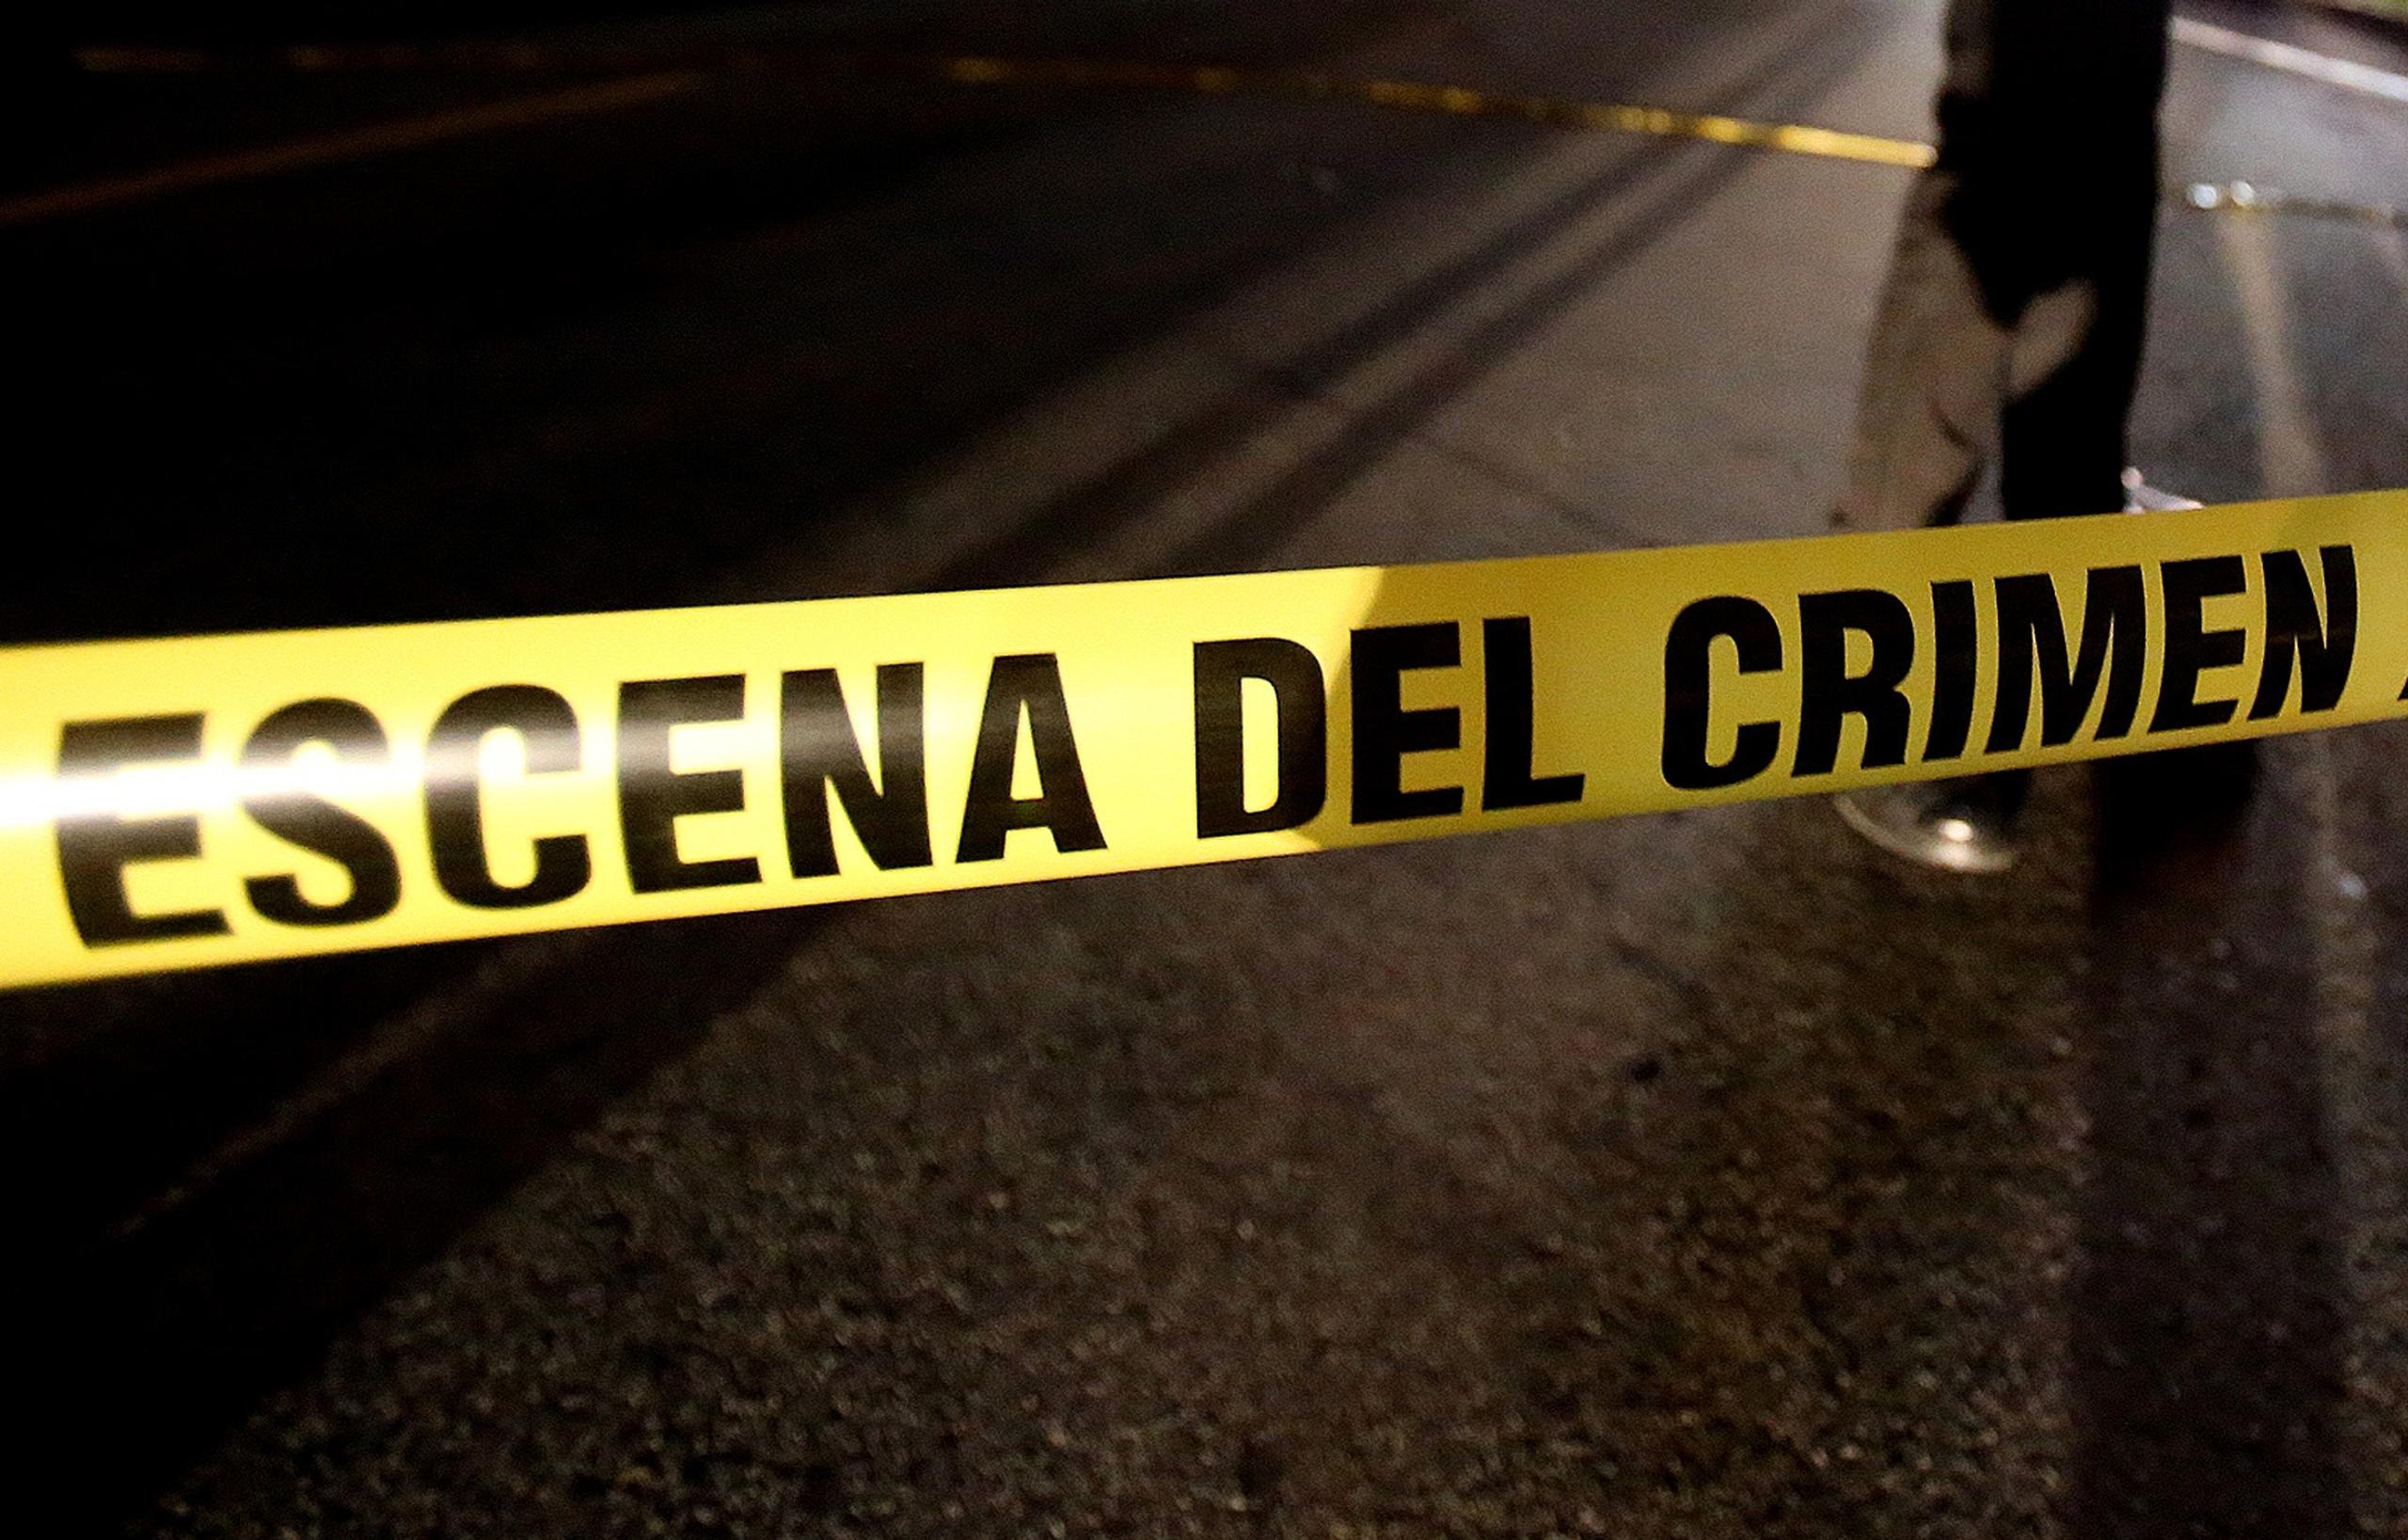 El cadáver fue localizado el 10 de abril de 2021, mientras que la víctima, identificada como Luis Miguel Bengochea Santiago, de 28 años, alias Coky, fue reportada desaparecida el 5 de abril de ese año.